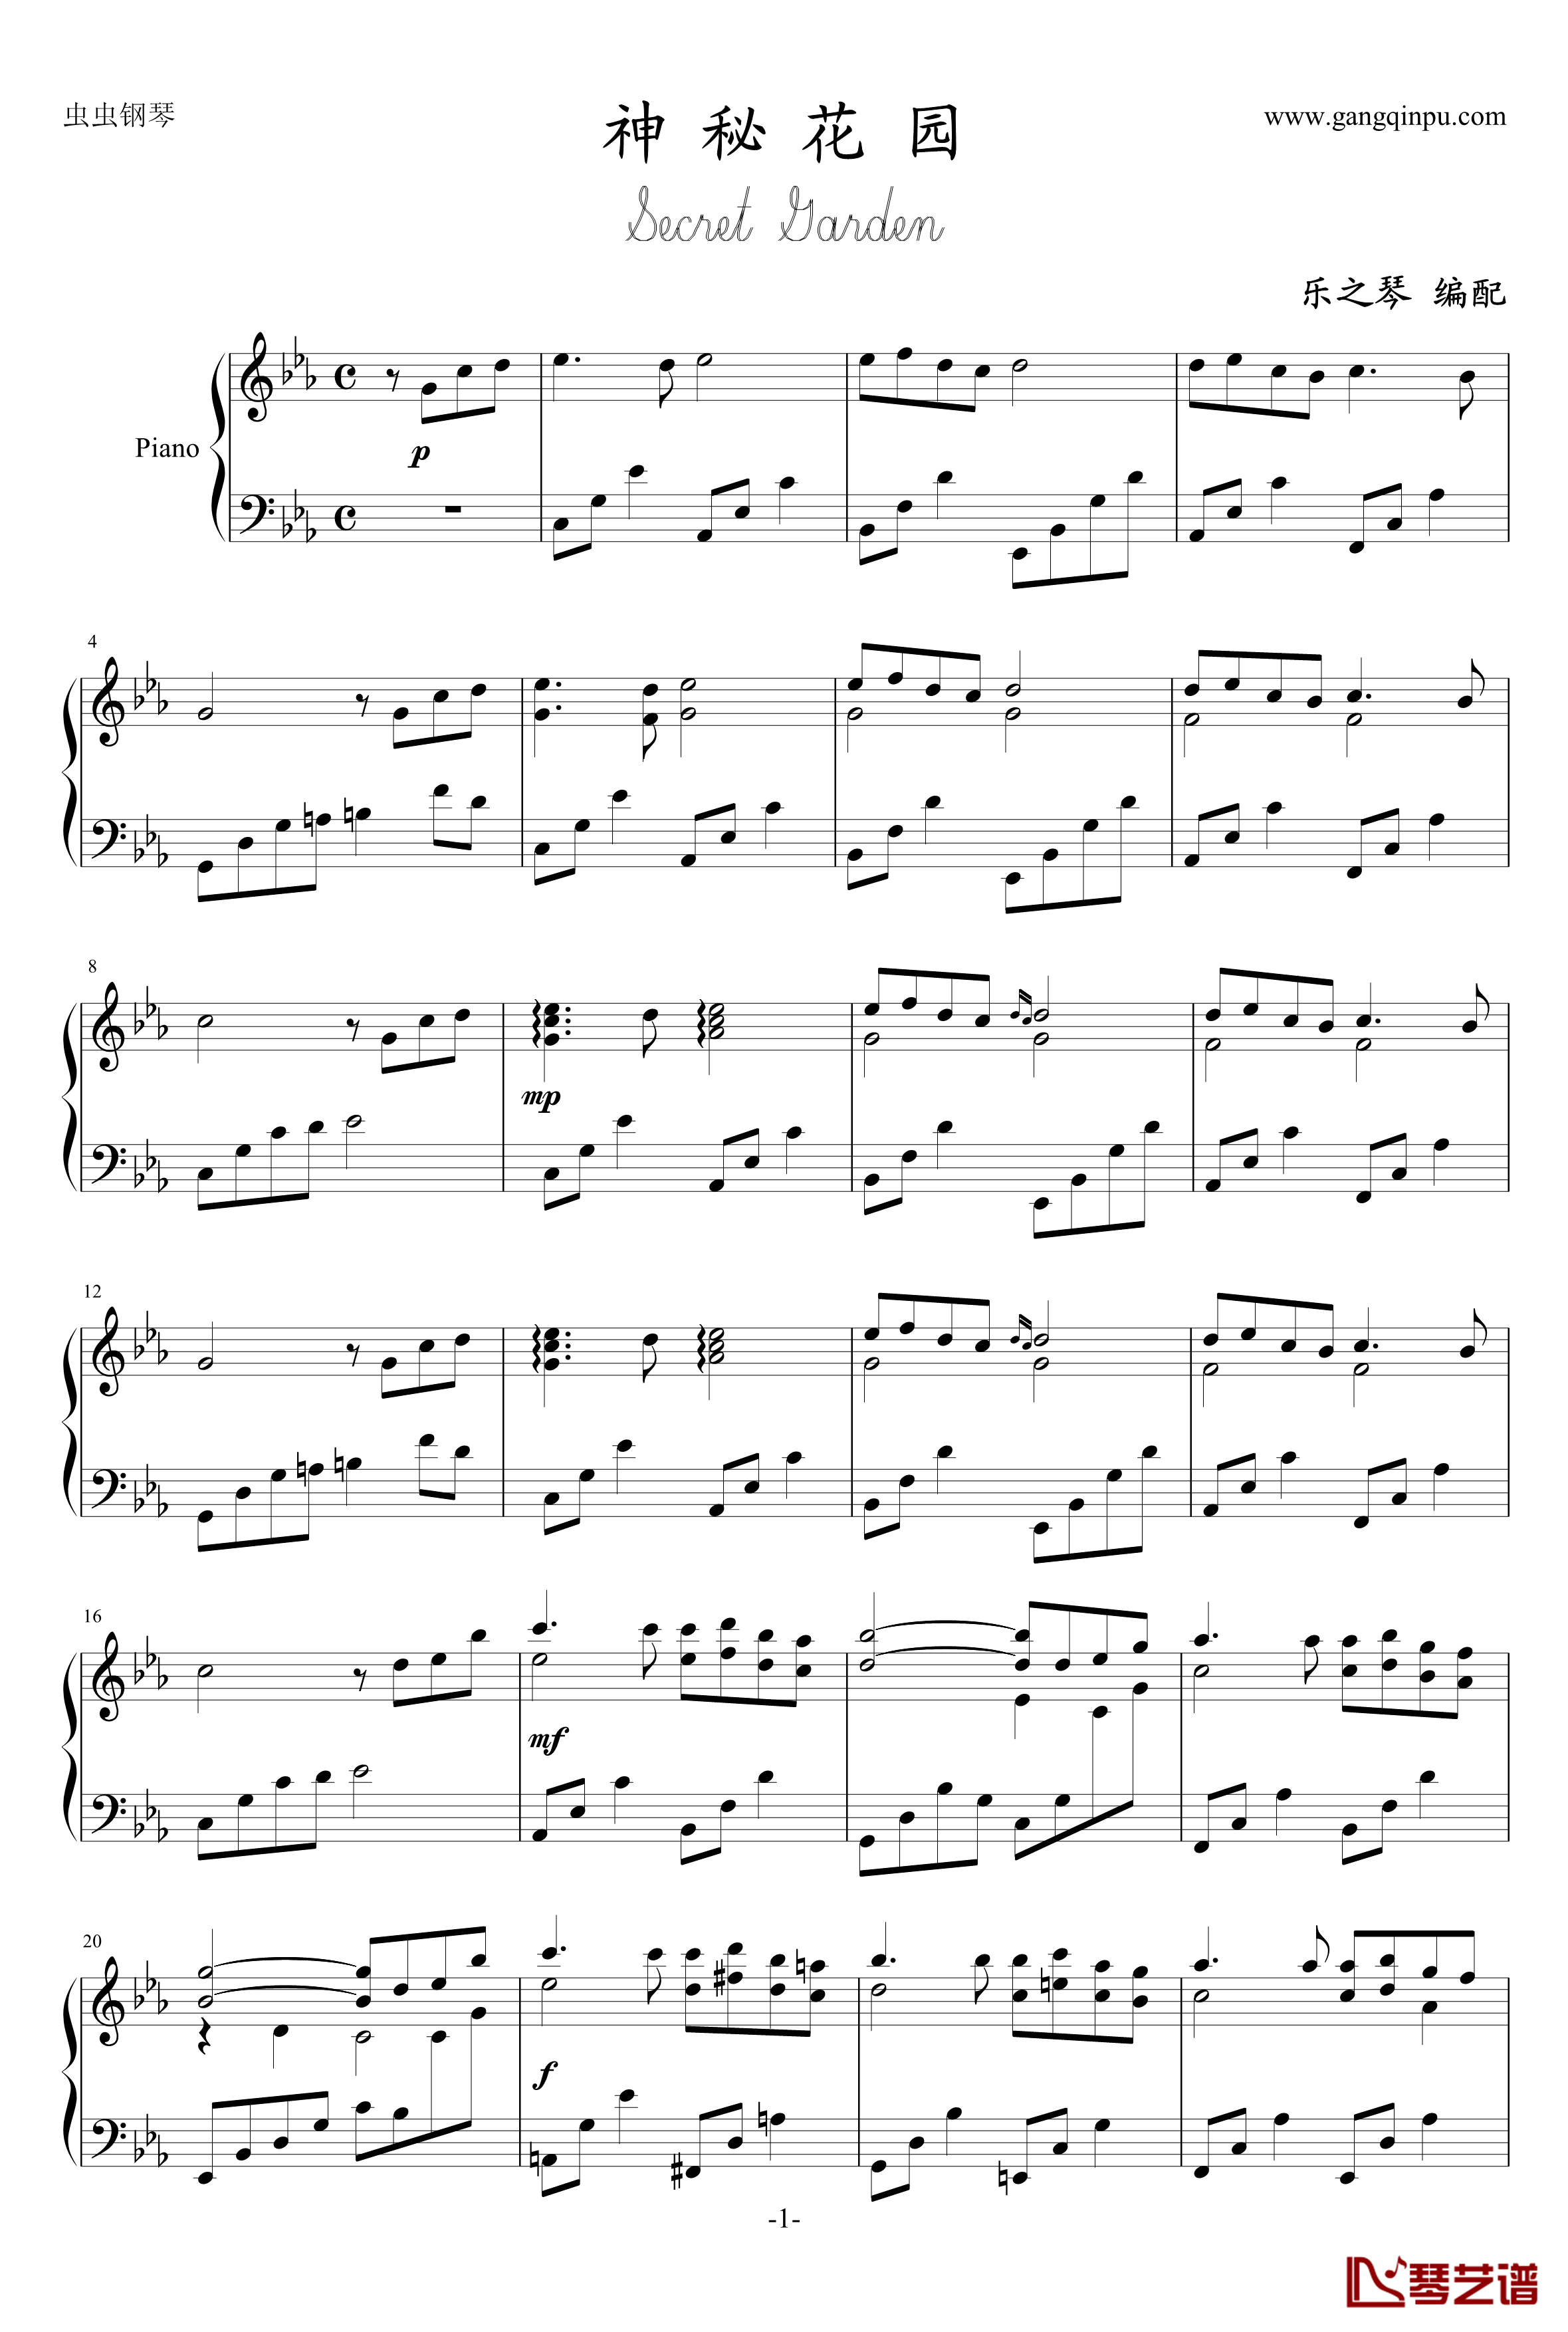 神秘花园钢琴谱——乐之琴独奏版-克莱德曼1